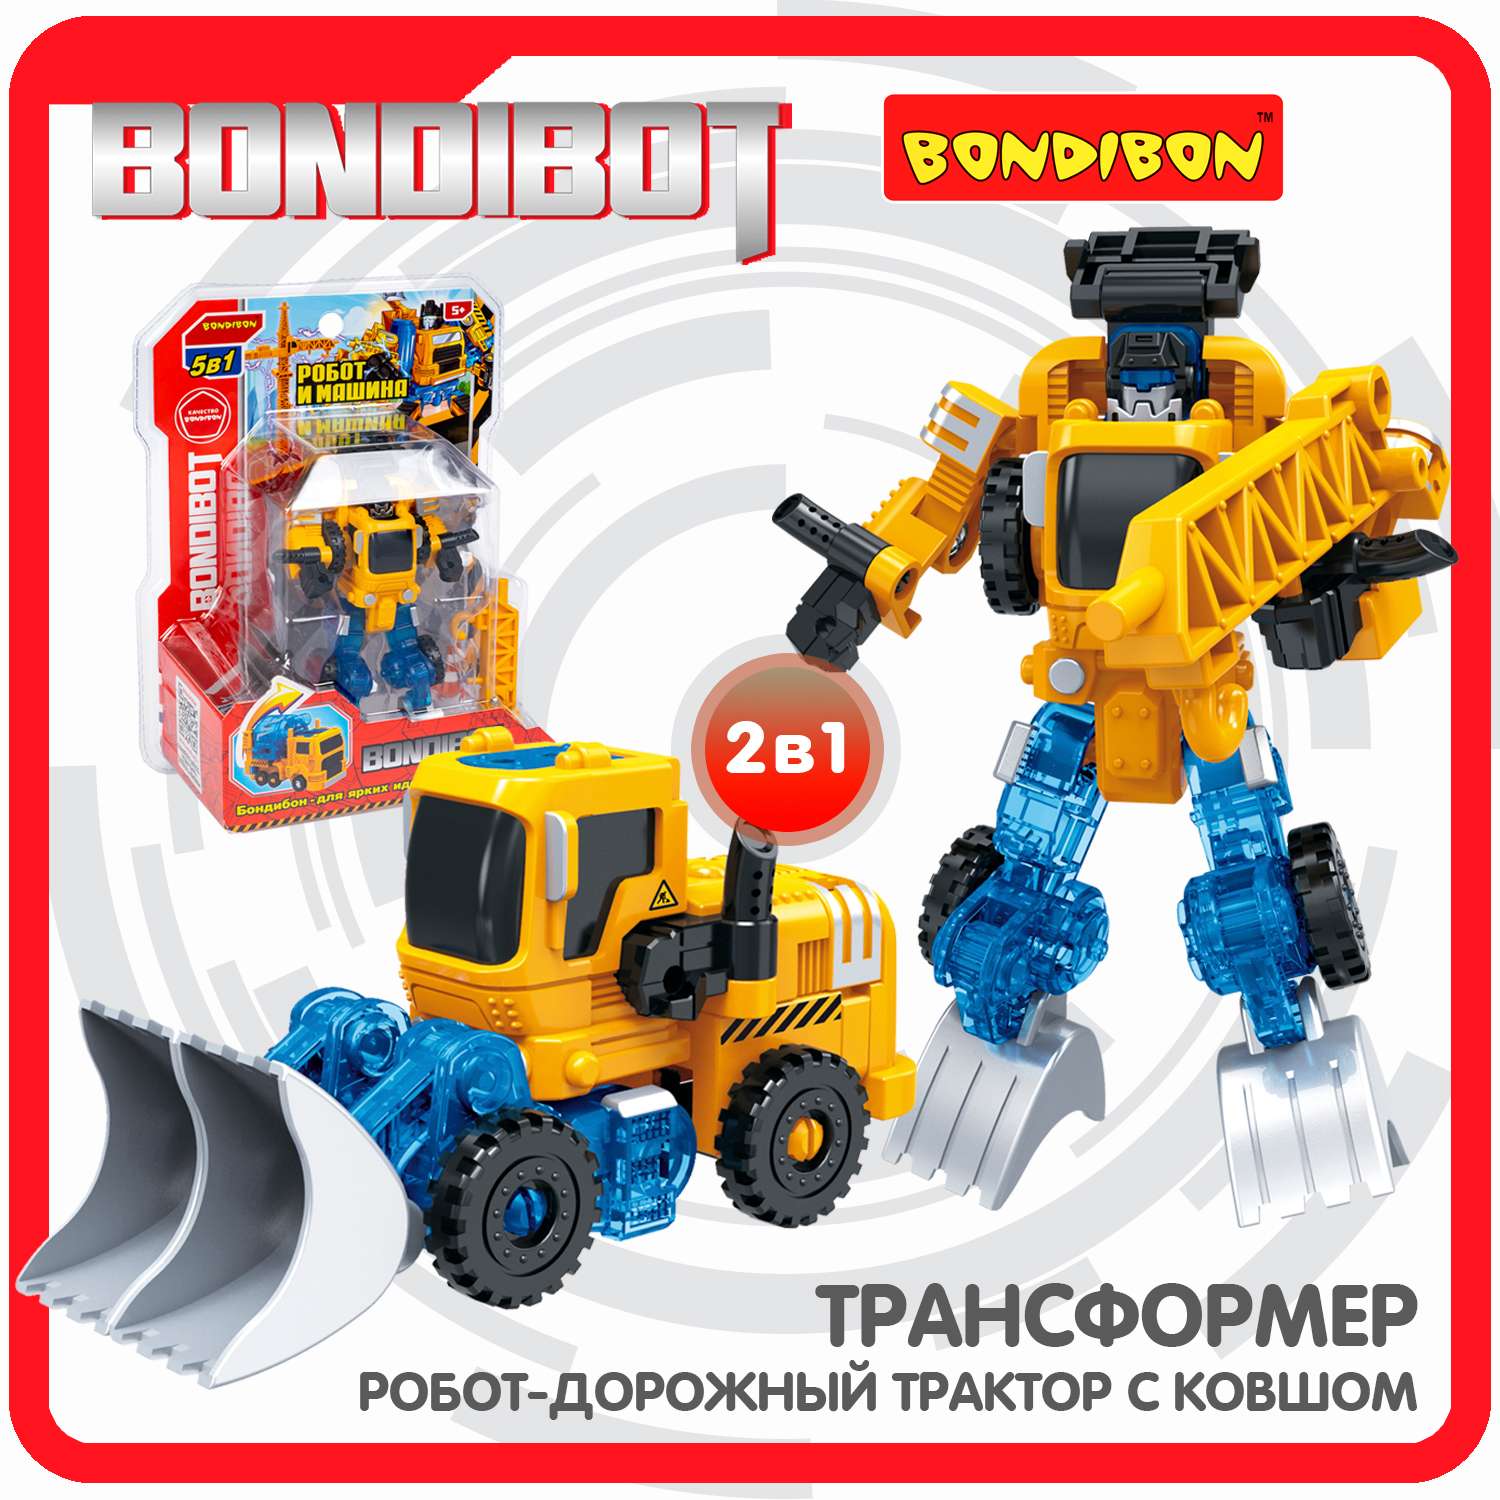 Трансформер BONDIBON BONDIBOT 2в1 робот- дорожный трактор с ковшом жёлтого цвета - фото 1